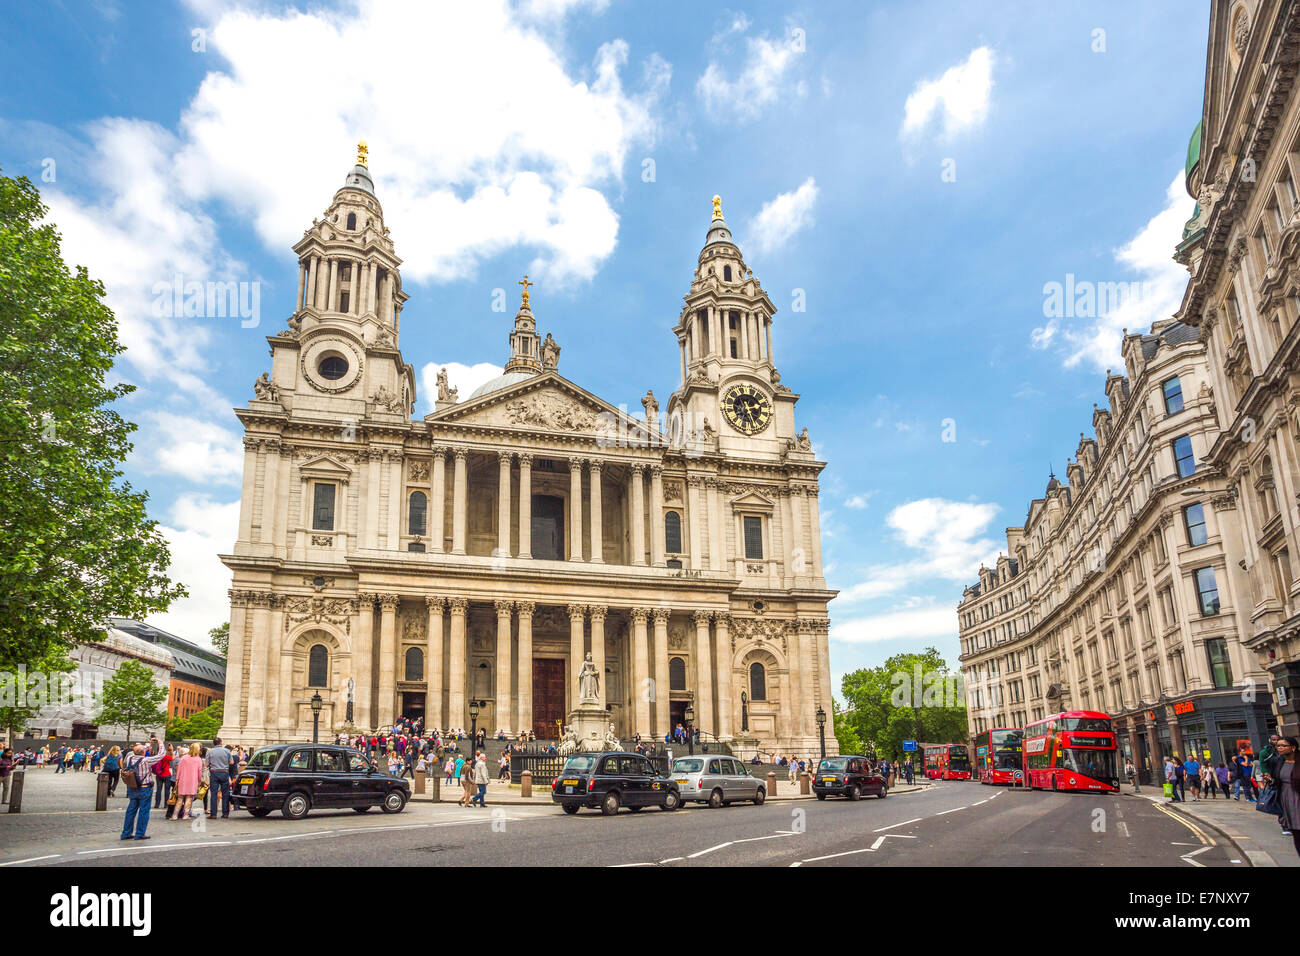 Avenue, Building, Cathédrale, ville, Londres, Angleterre, Royaume-Uni, Saint Paul, l'architecture, l'histoire, la religion, le tourisme, voyages Banque D'Images